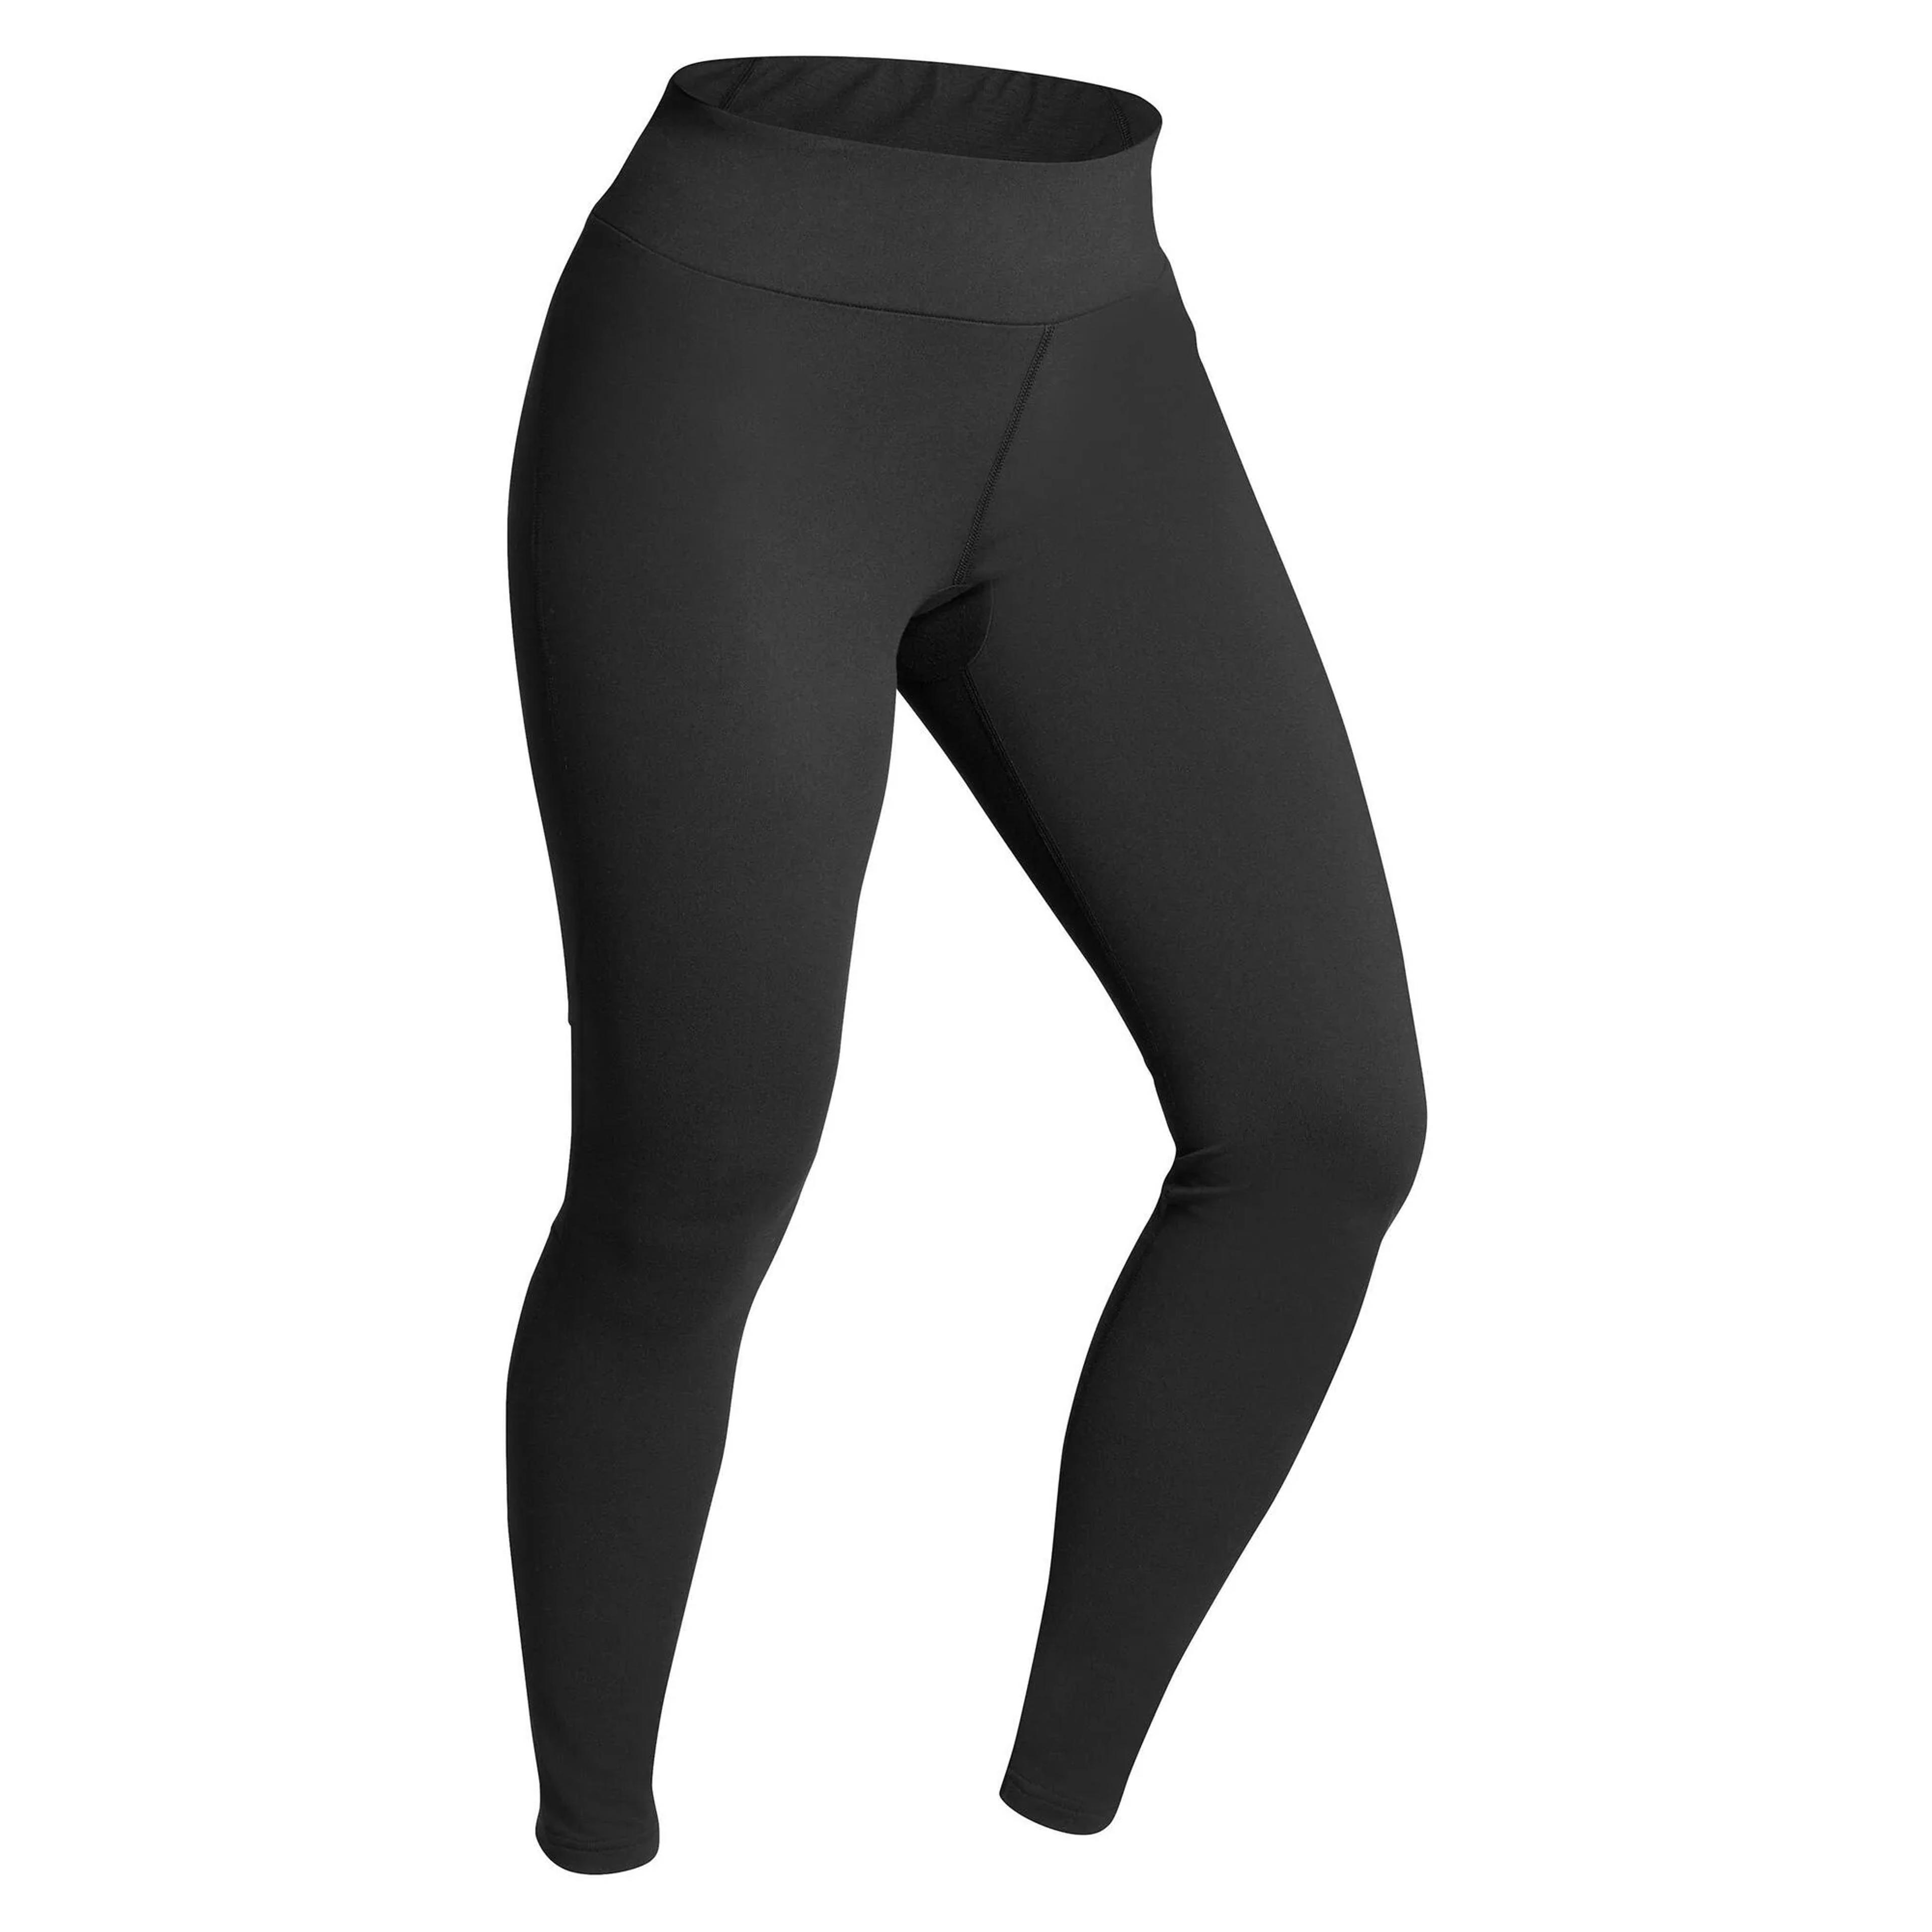 Ski 500, Thermal Underwear Base Layer Pants, Women's - Black / M / 8574729